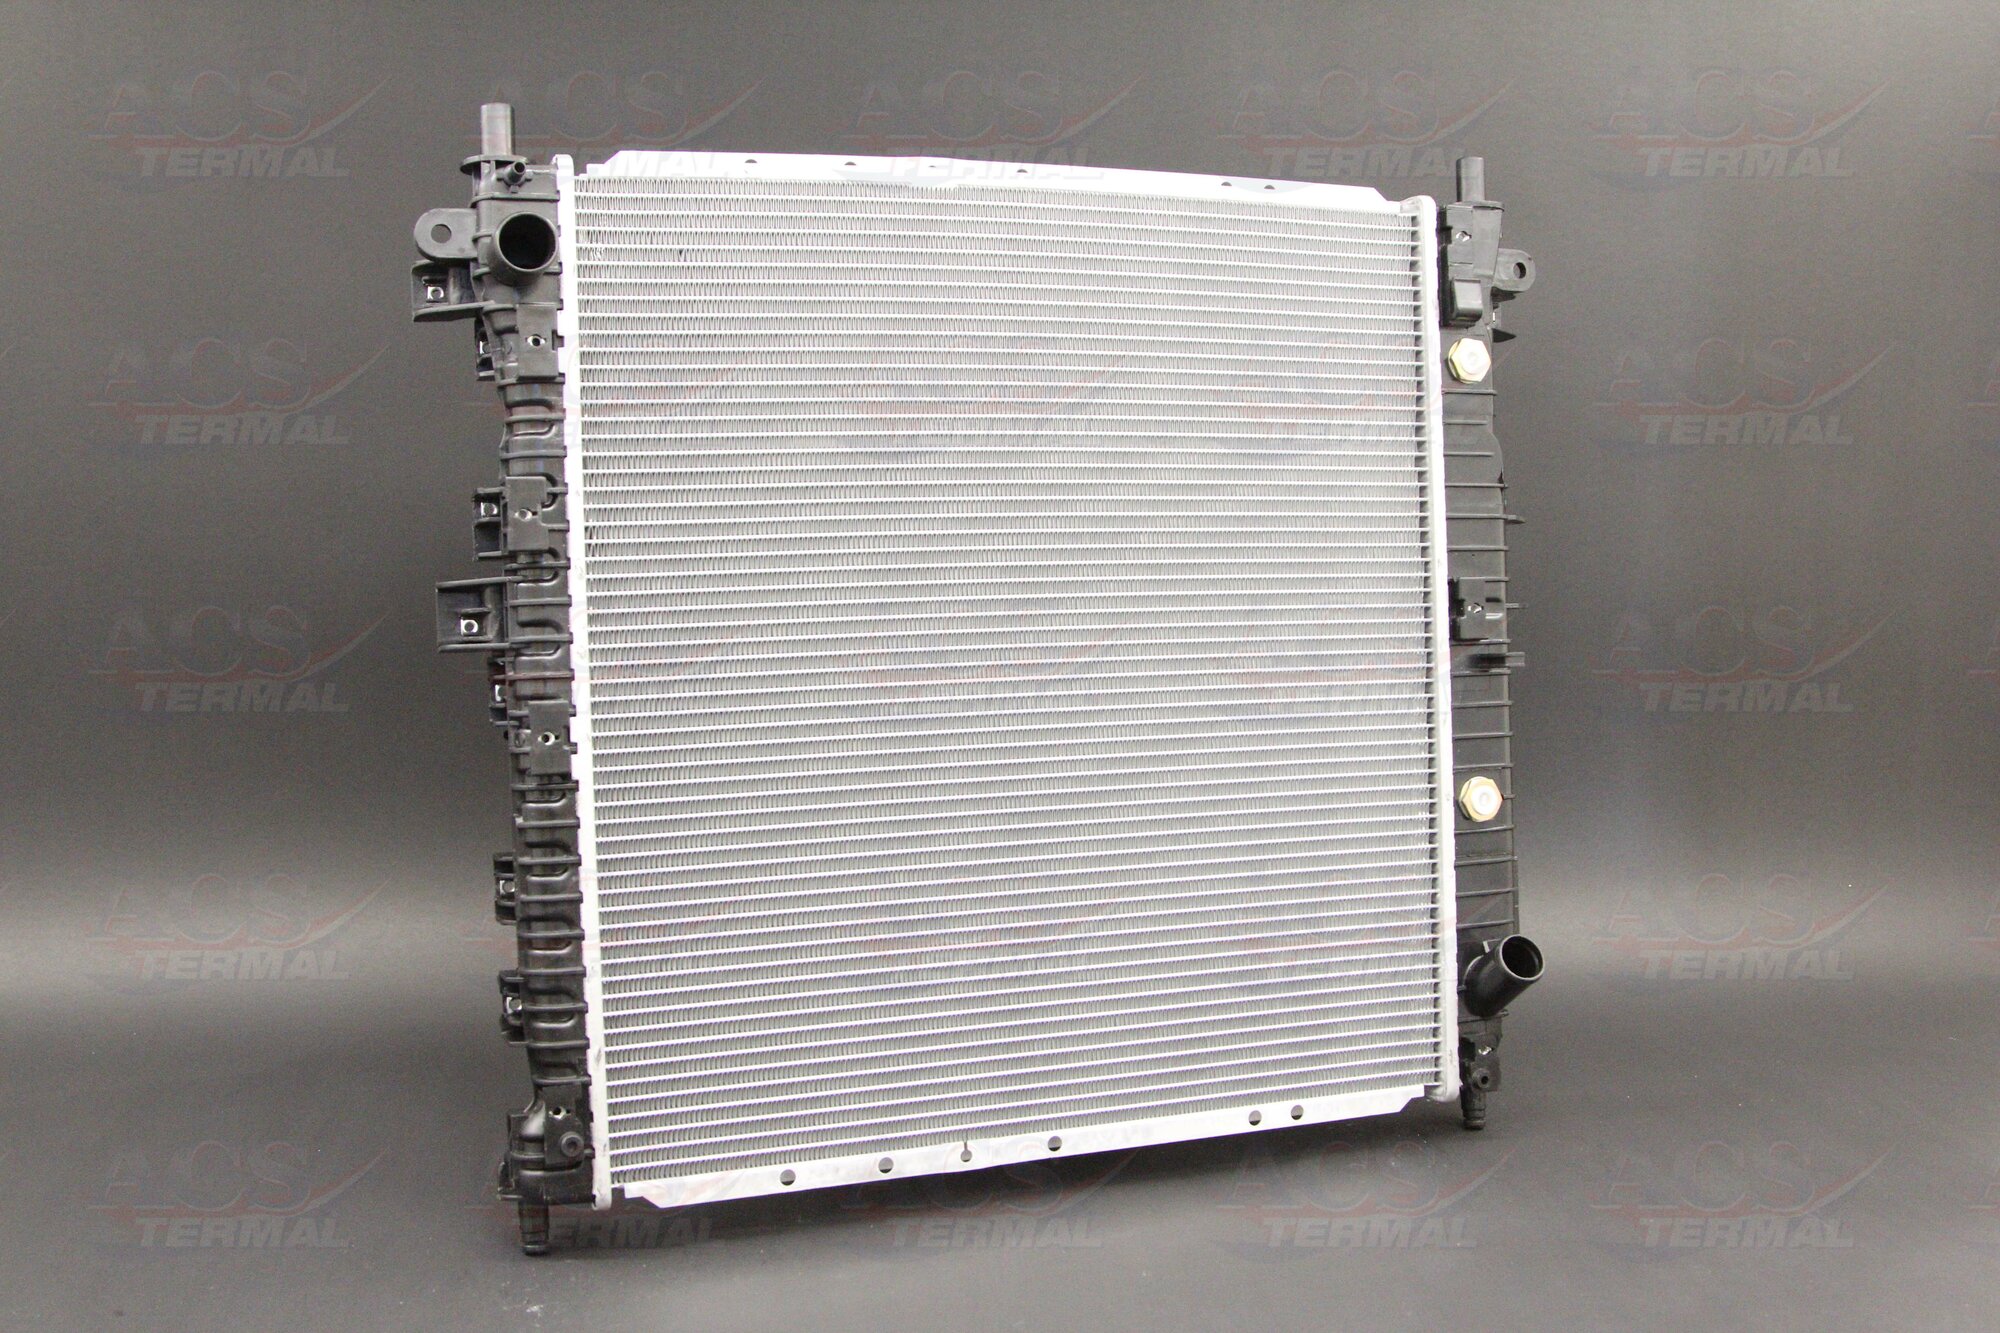 Радиатор охлаждения для Санг Енг Кайрон 2005-2015 год выпуска (Ssangyong Kyron) ACS TERMAL 641316